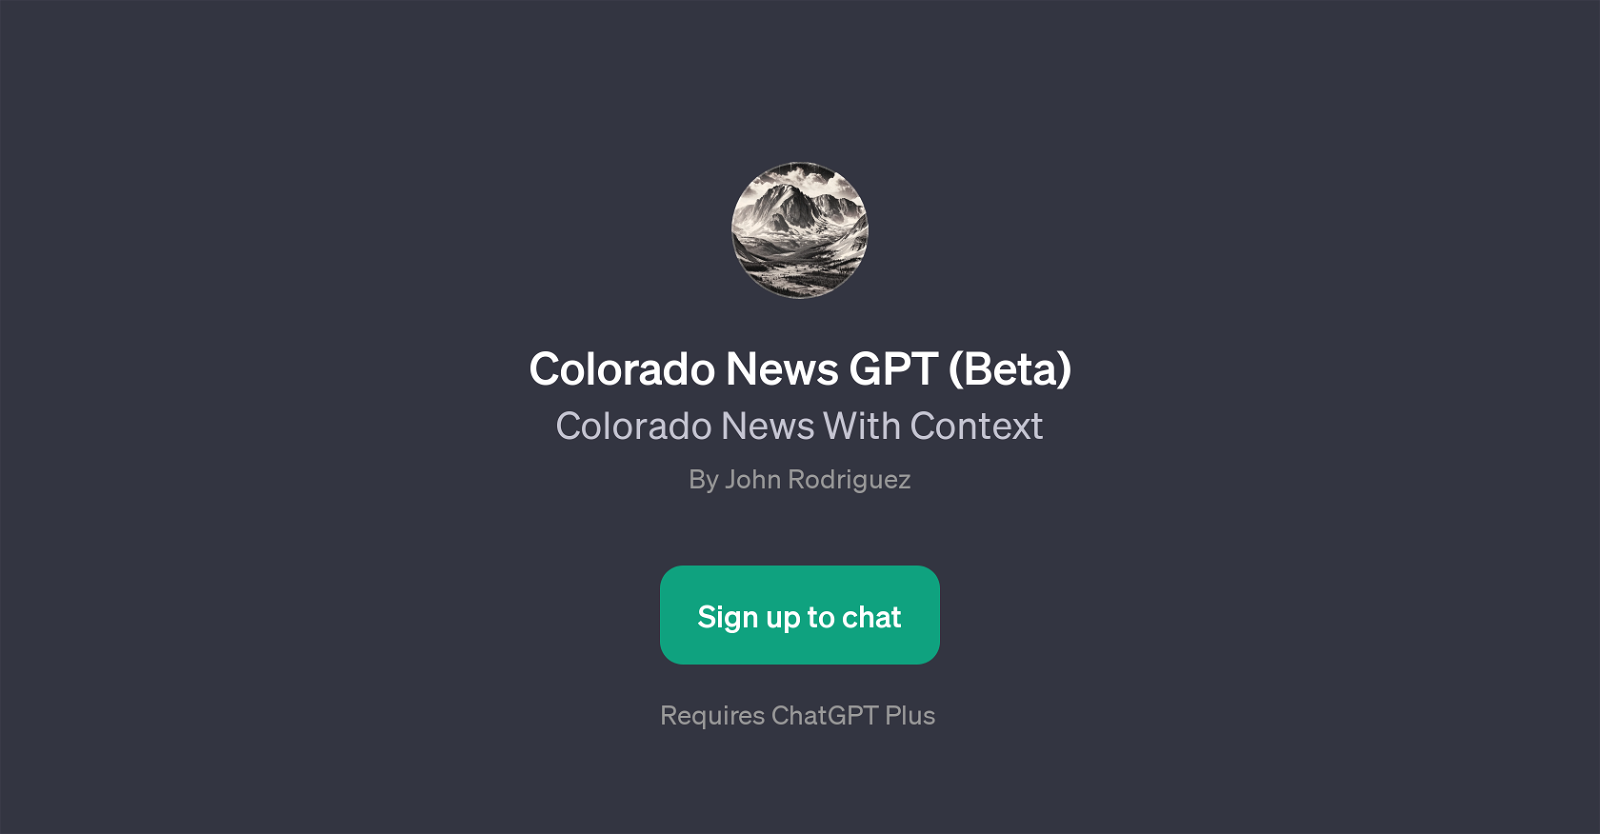 Colorado News GPT (Beta) website